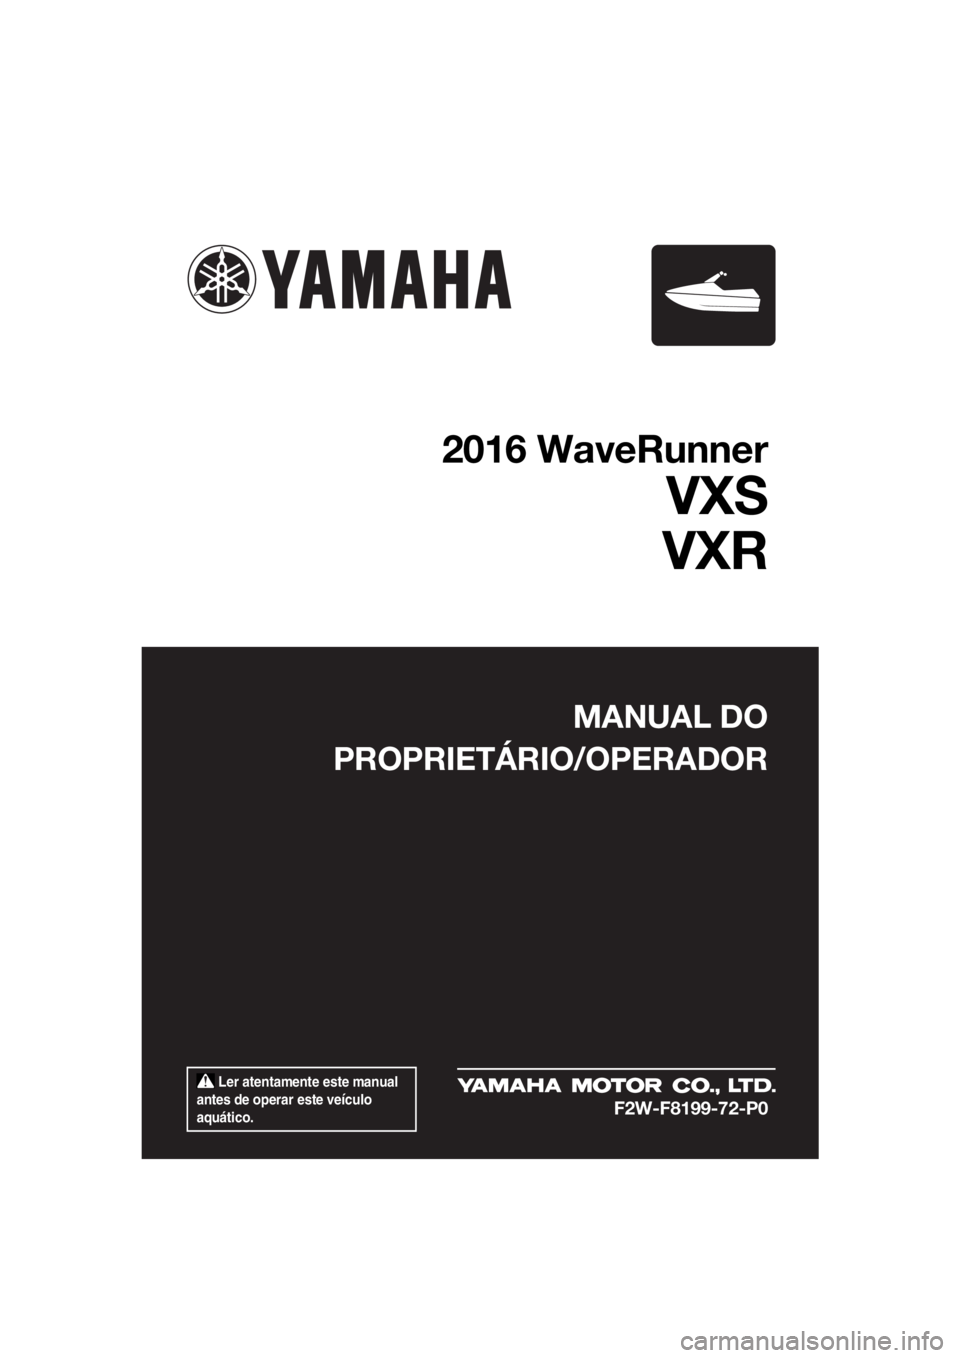 YAMAHA VXS 2016  Manual de utilização (in Portuguese)  Ler atentamente este manual 
antes de operar este veículo 
aquático.
MANUAL DO
PROPRIETÁRIO/OPERADOR
2016 WaveRunner
VXS
VXR
F2W-F8199-72-P0
UF2W72P0.book  Page 1  Wednesday, September 30, 2015  1